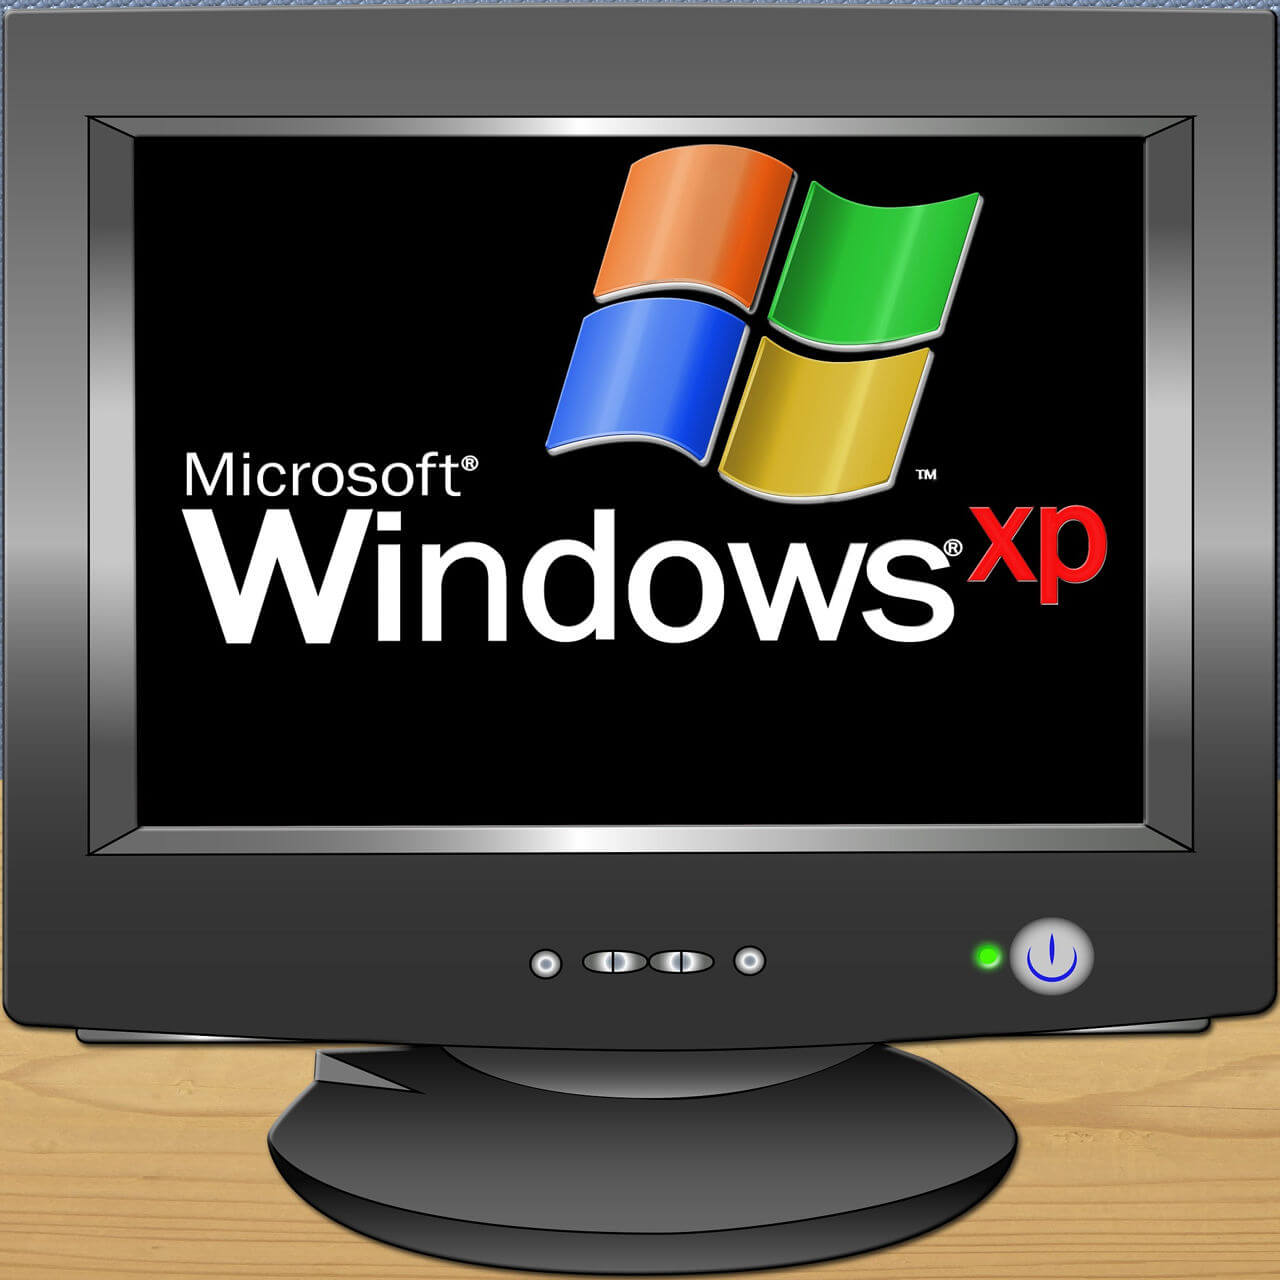 Windows XP marketshare